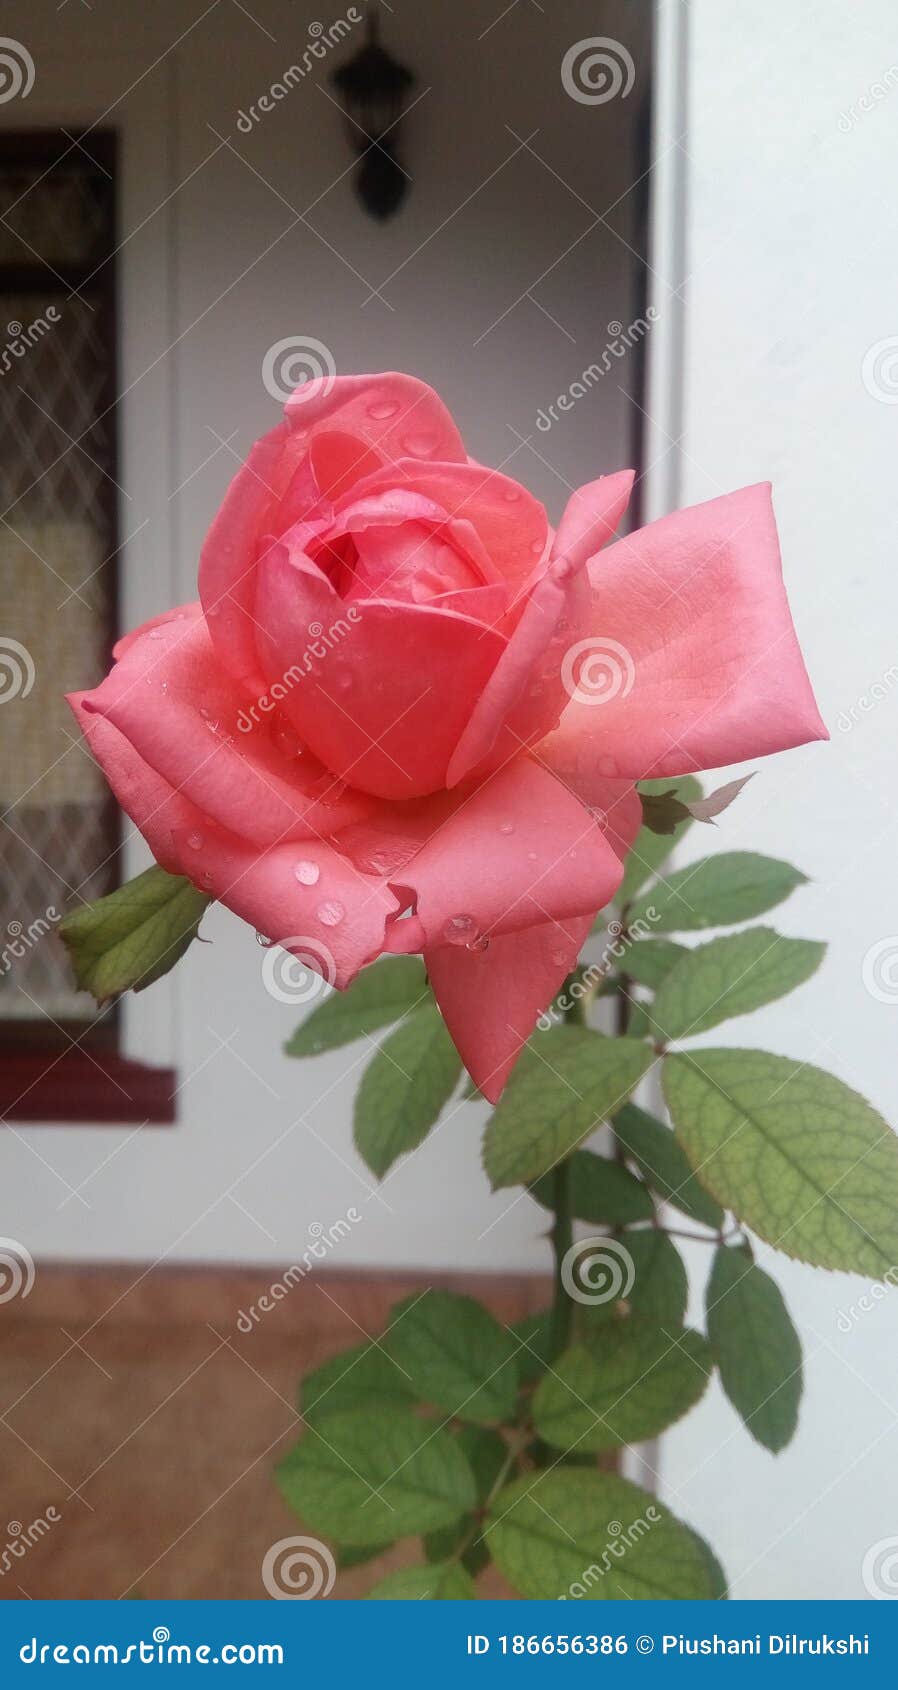 Pasivo Gárgaras mezclador Rosa rosada en mi jardín foto de archivo. Imagen de mejor - 186656386